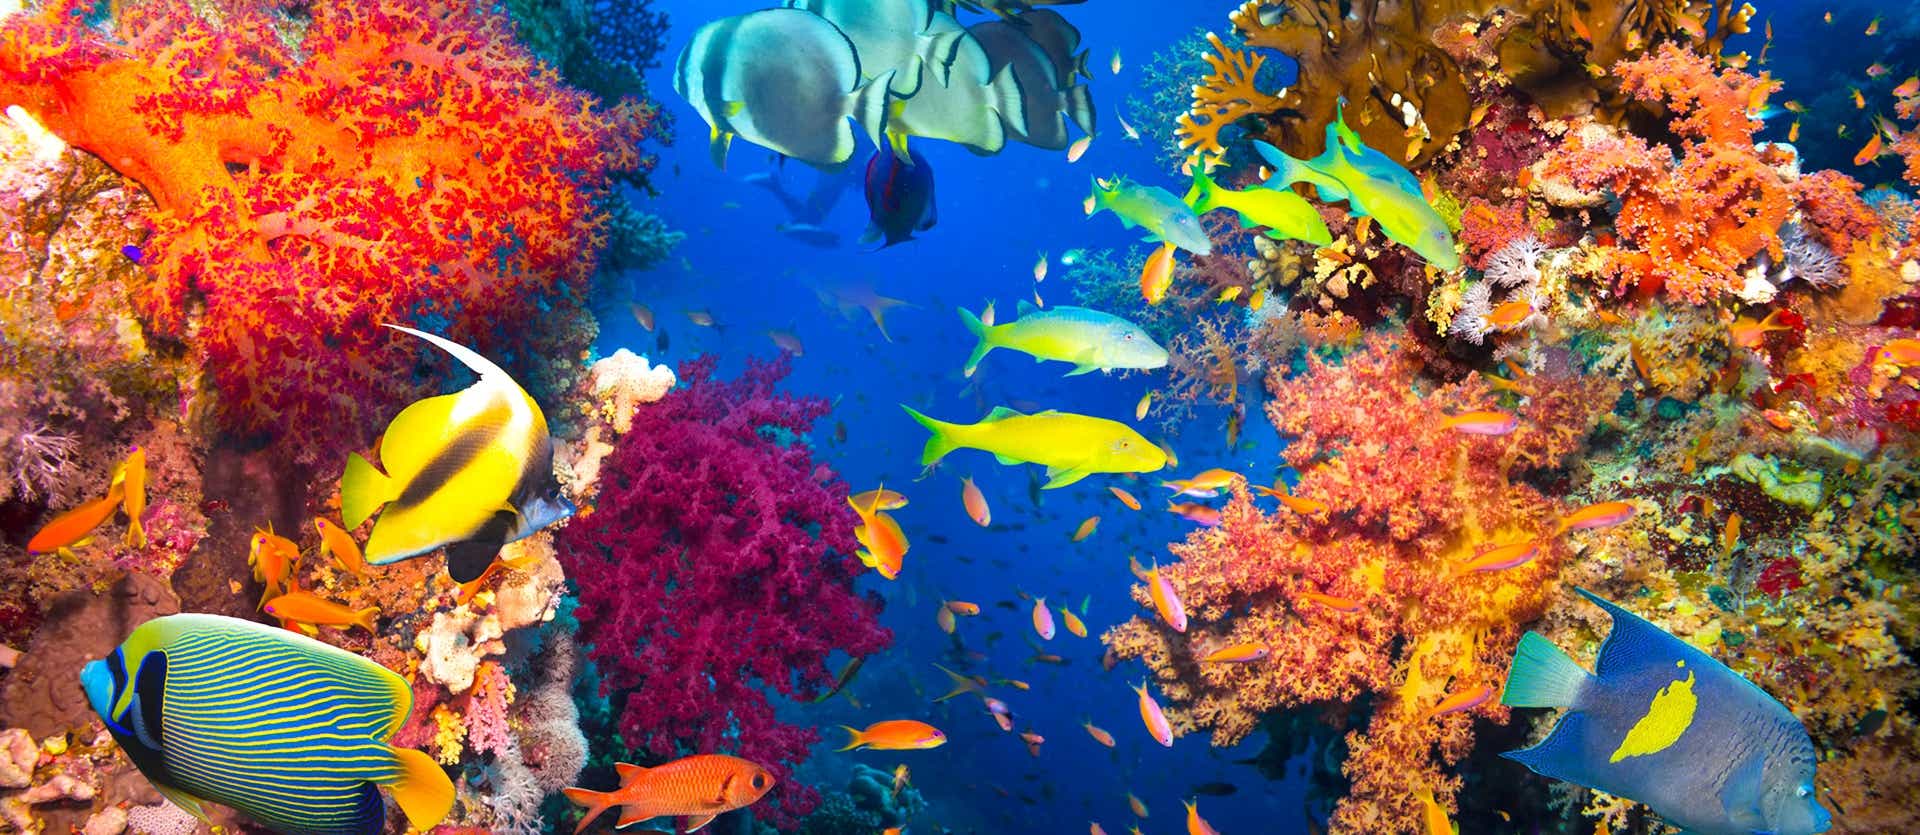 Récif corallien et poissons tropicaux <span class="iconos separador"></span> Punta Cana